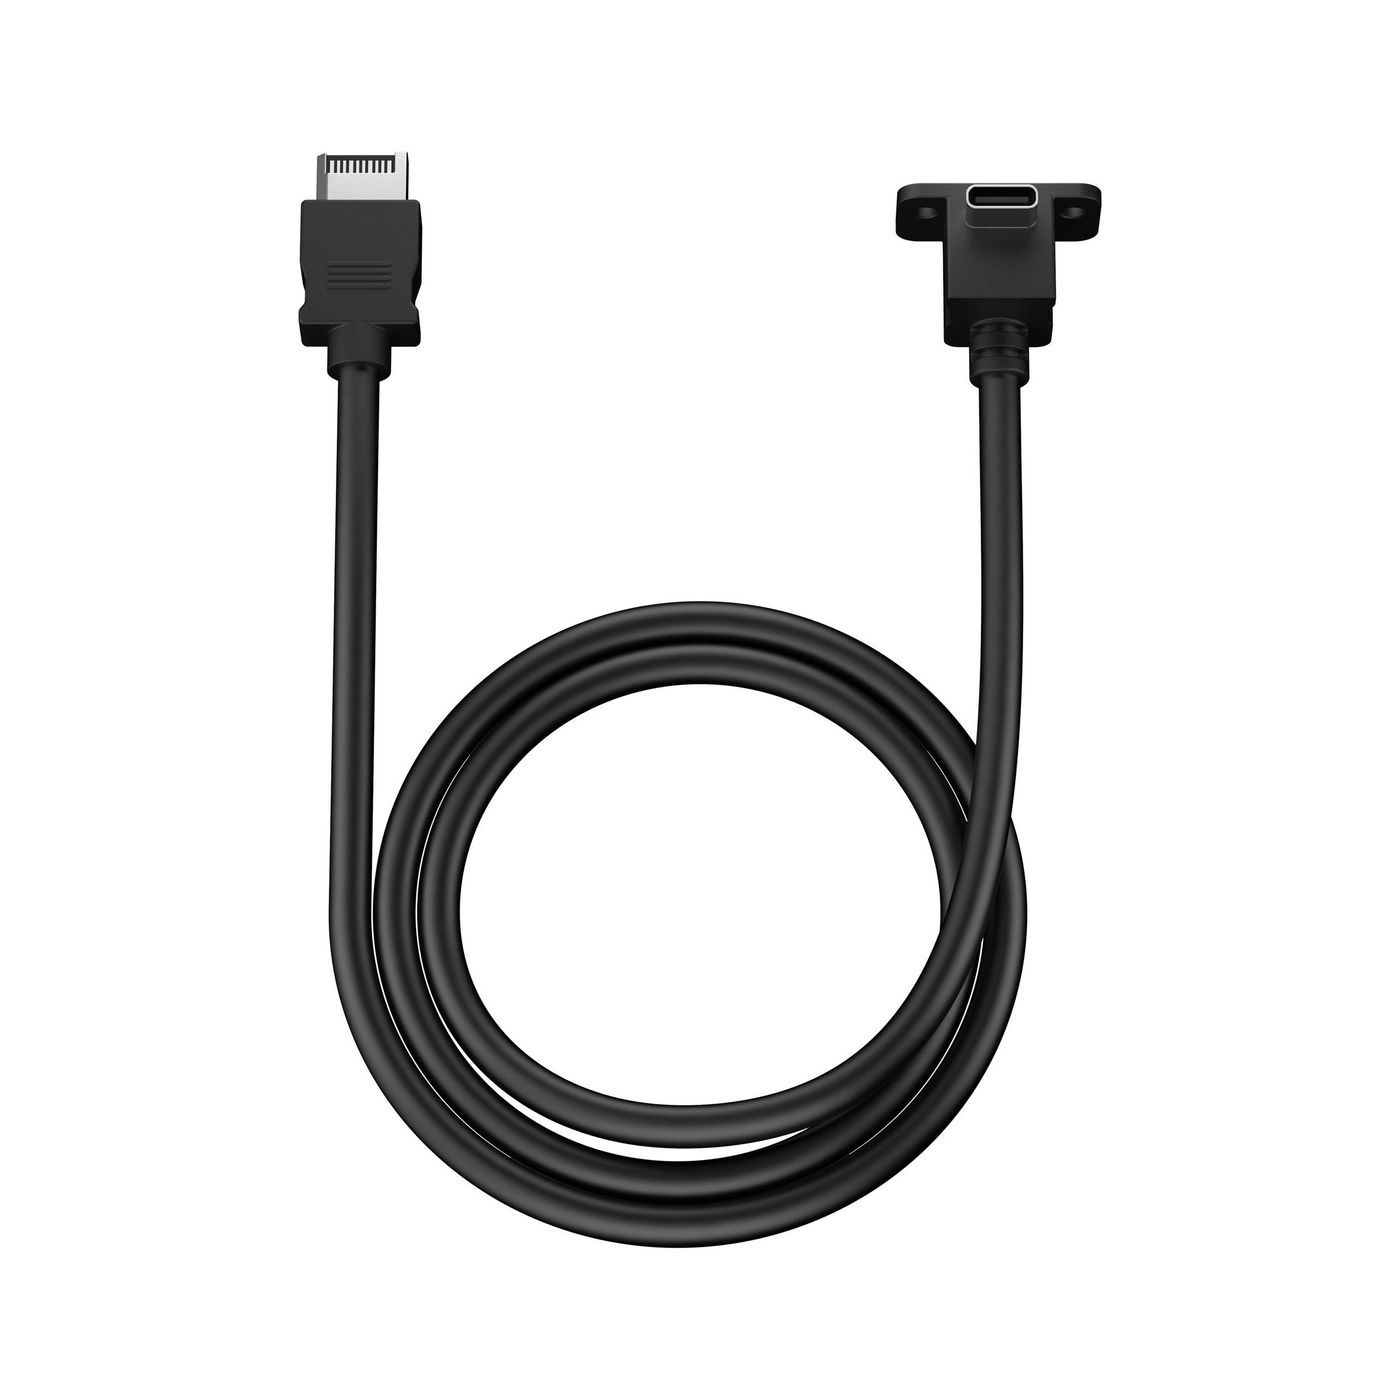 Fractal-Design FD-A-USBC-002 W128276942 Usb Cable 1 M Black 